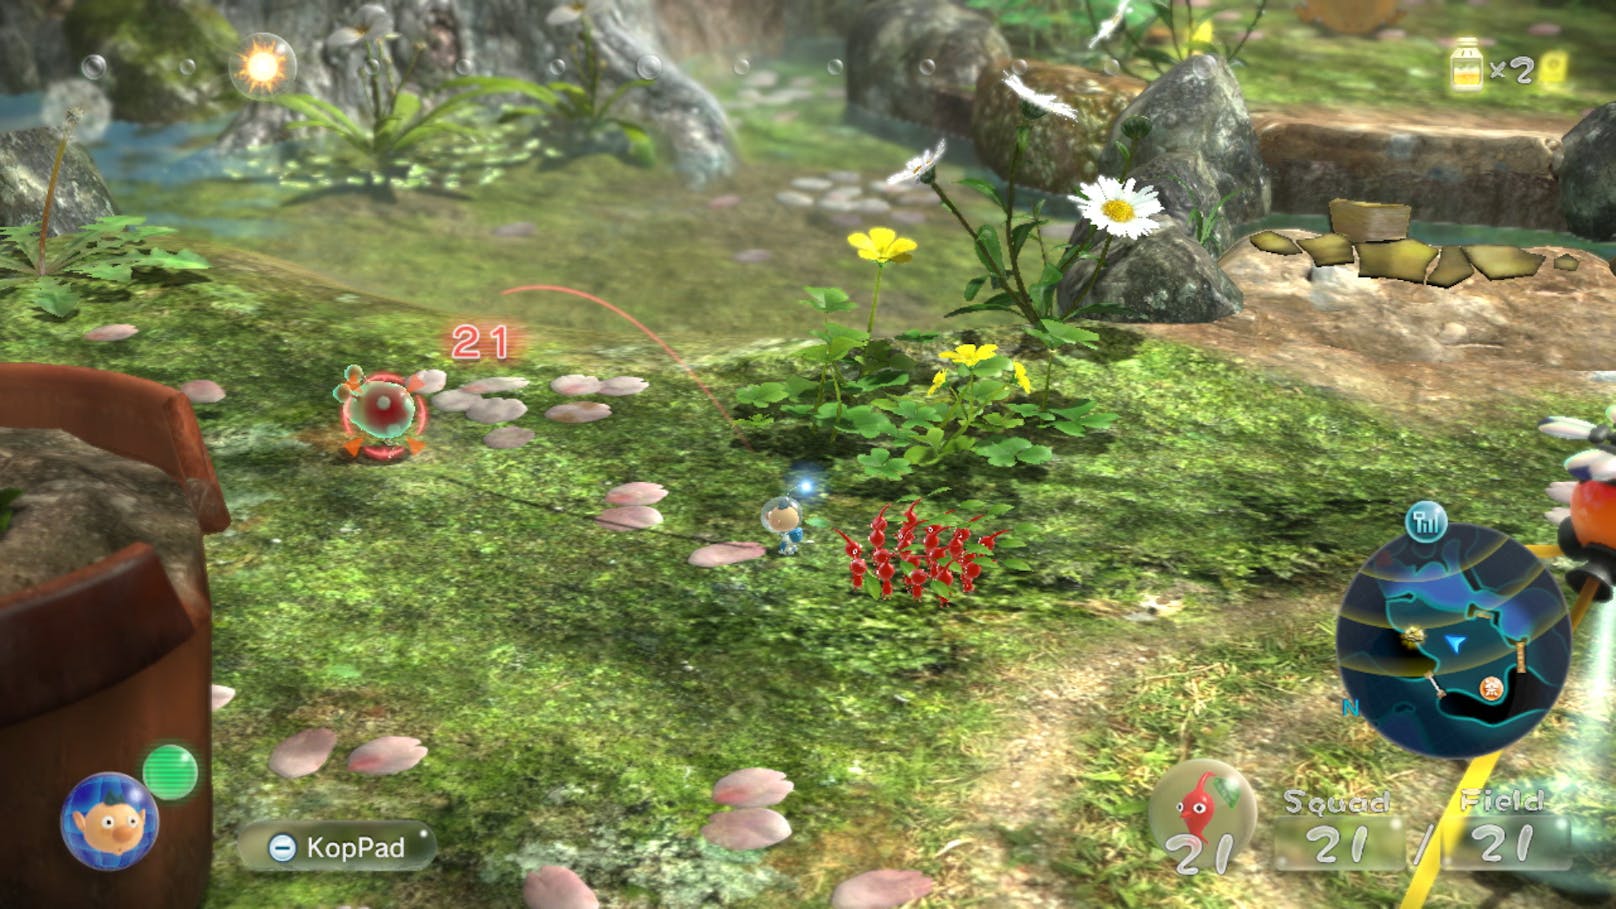 In der Wii-U-Fassung wurde die Karte auf dem GamePad dargestellt, das fällt auf der Nintendo Switch freilich weg.